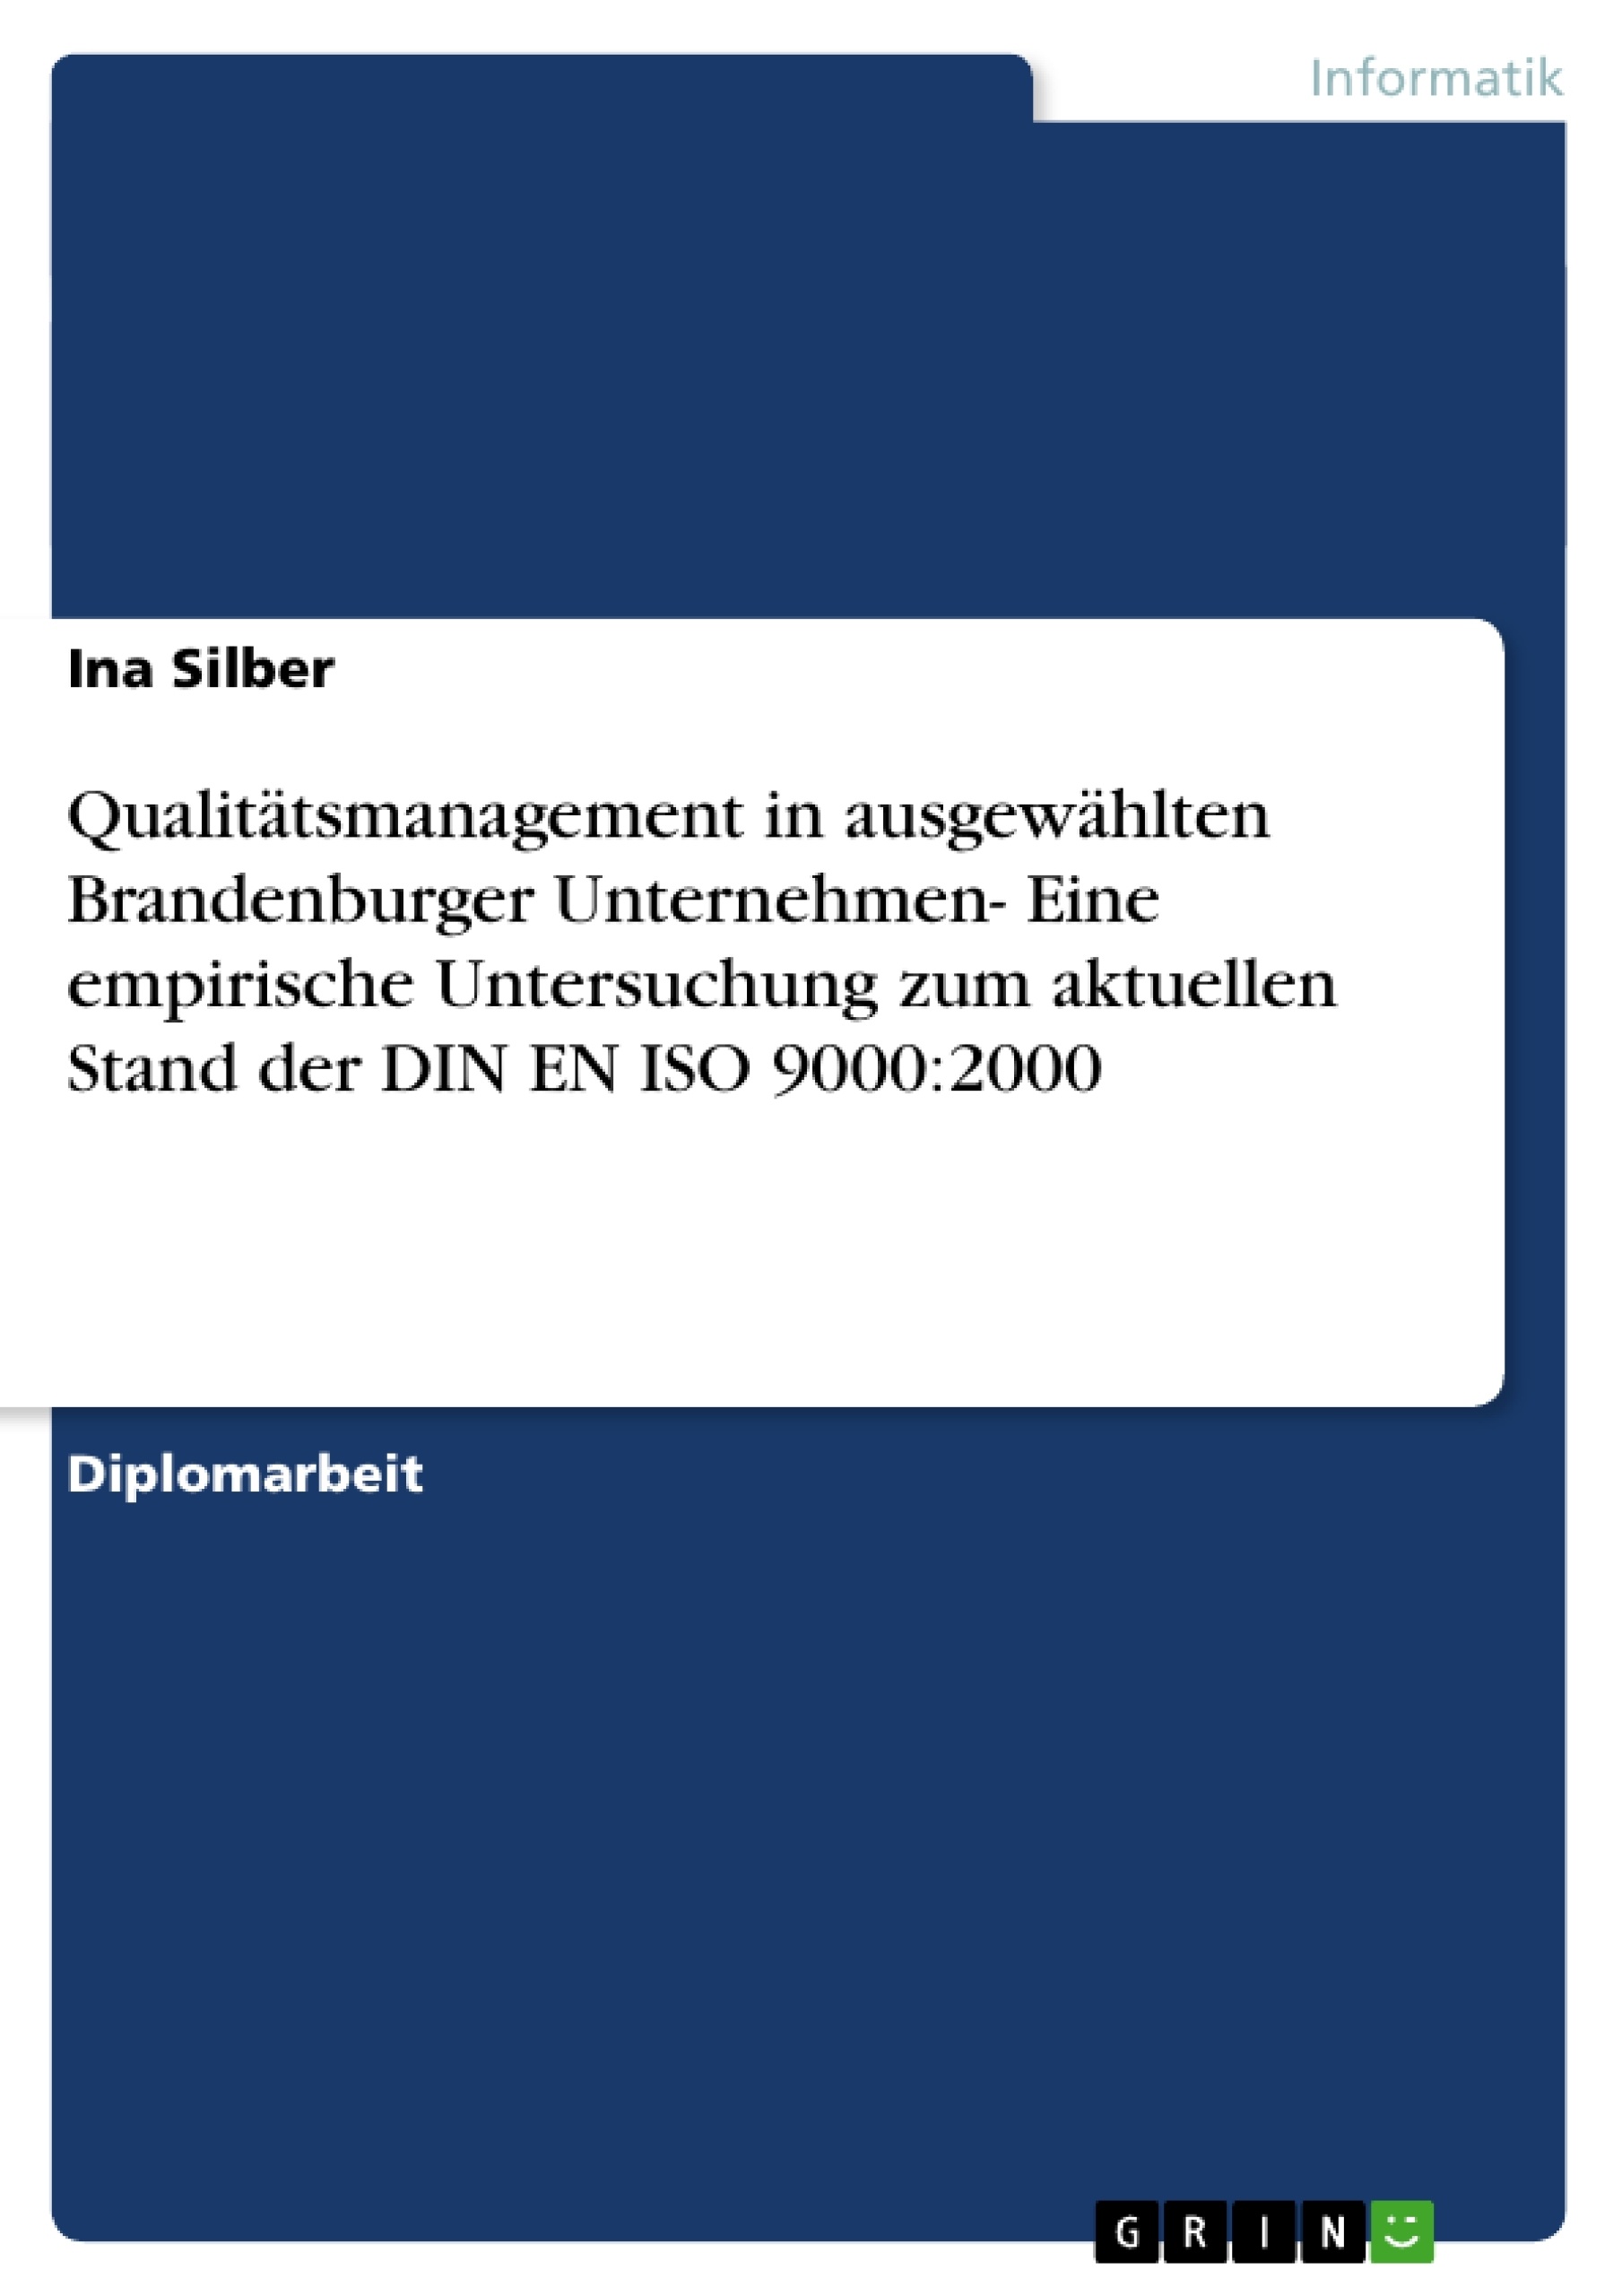 Titel: Qualitätsmanagement in ausgewählten Brandenburger Unternehmen- Eine empirische Untersuchung zum aktuellen Stand der DIN EN ISO 9000:2000